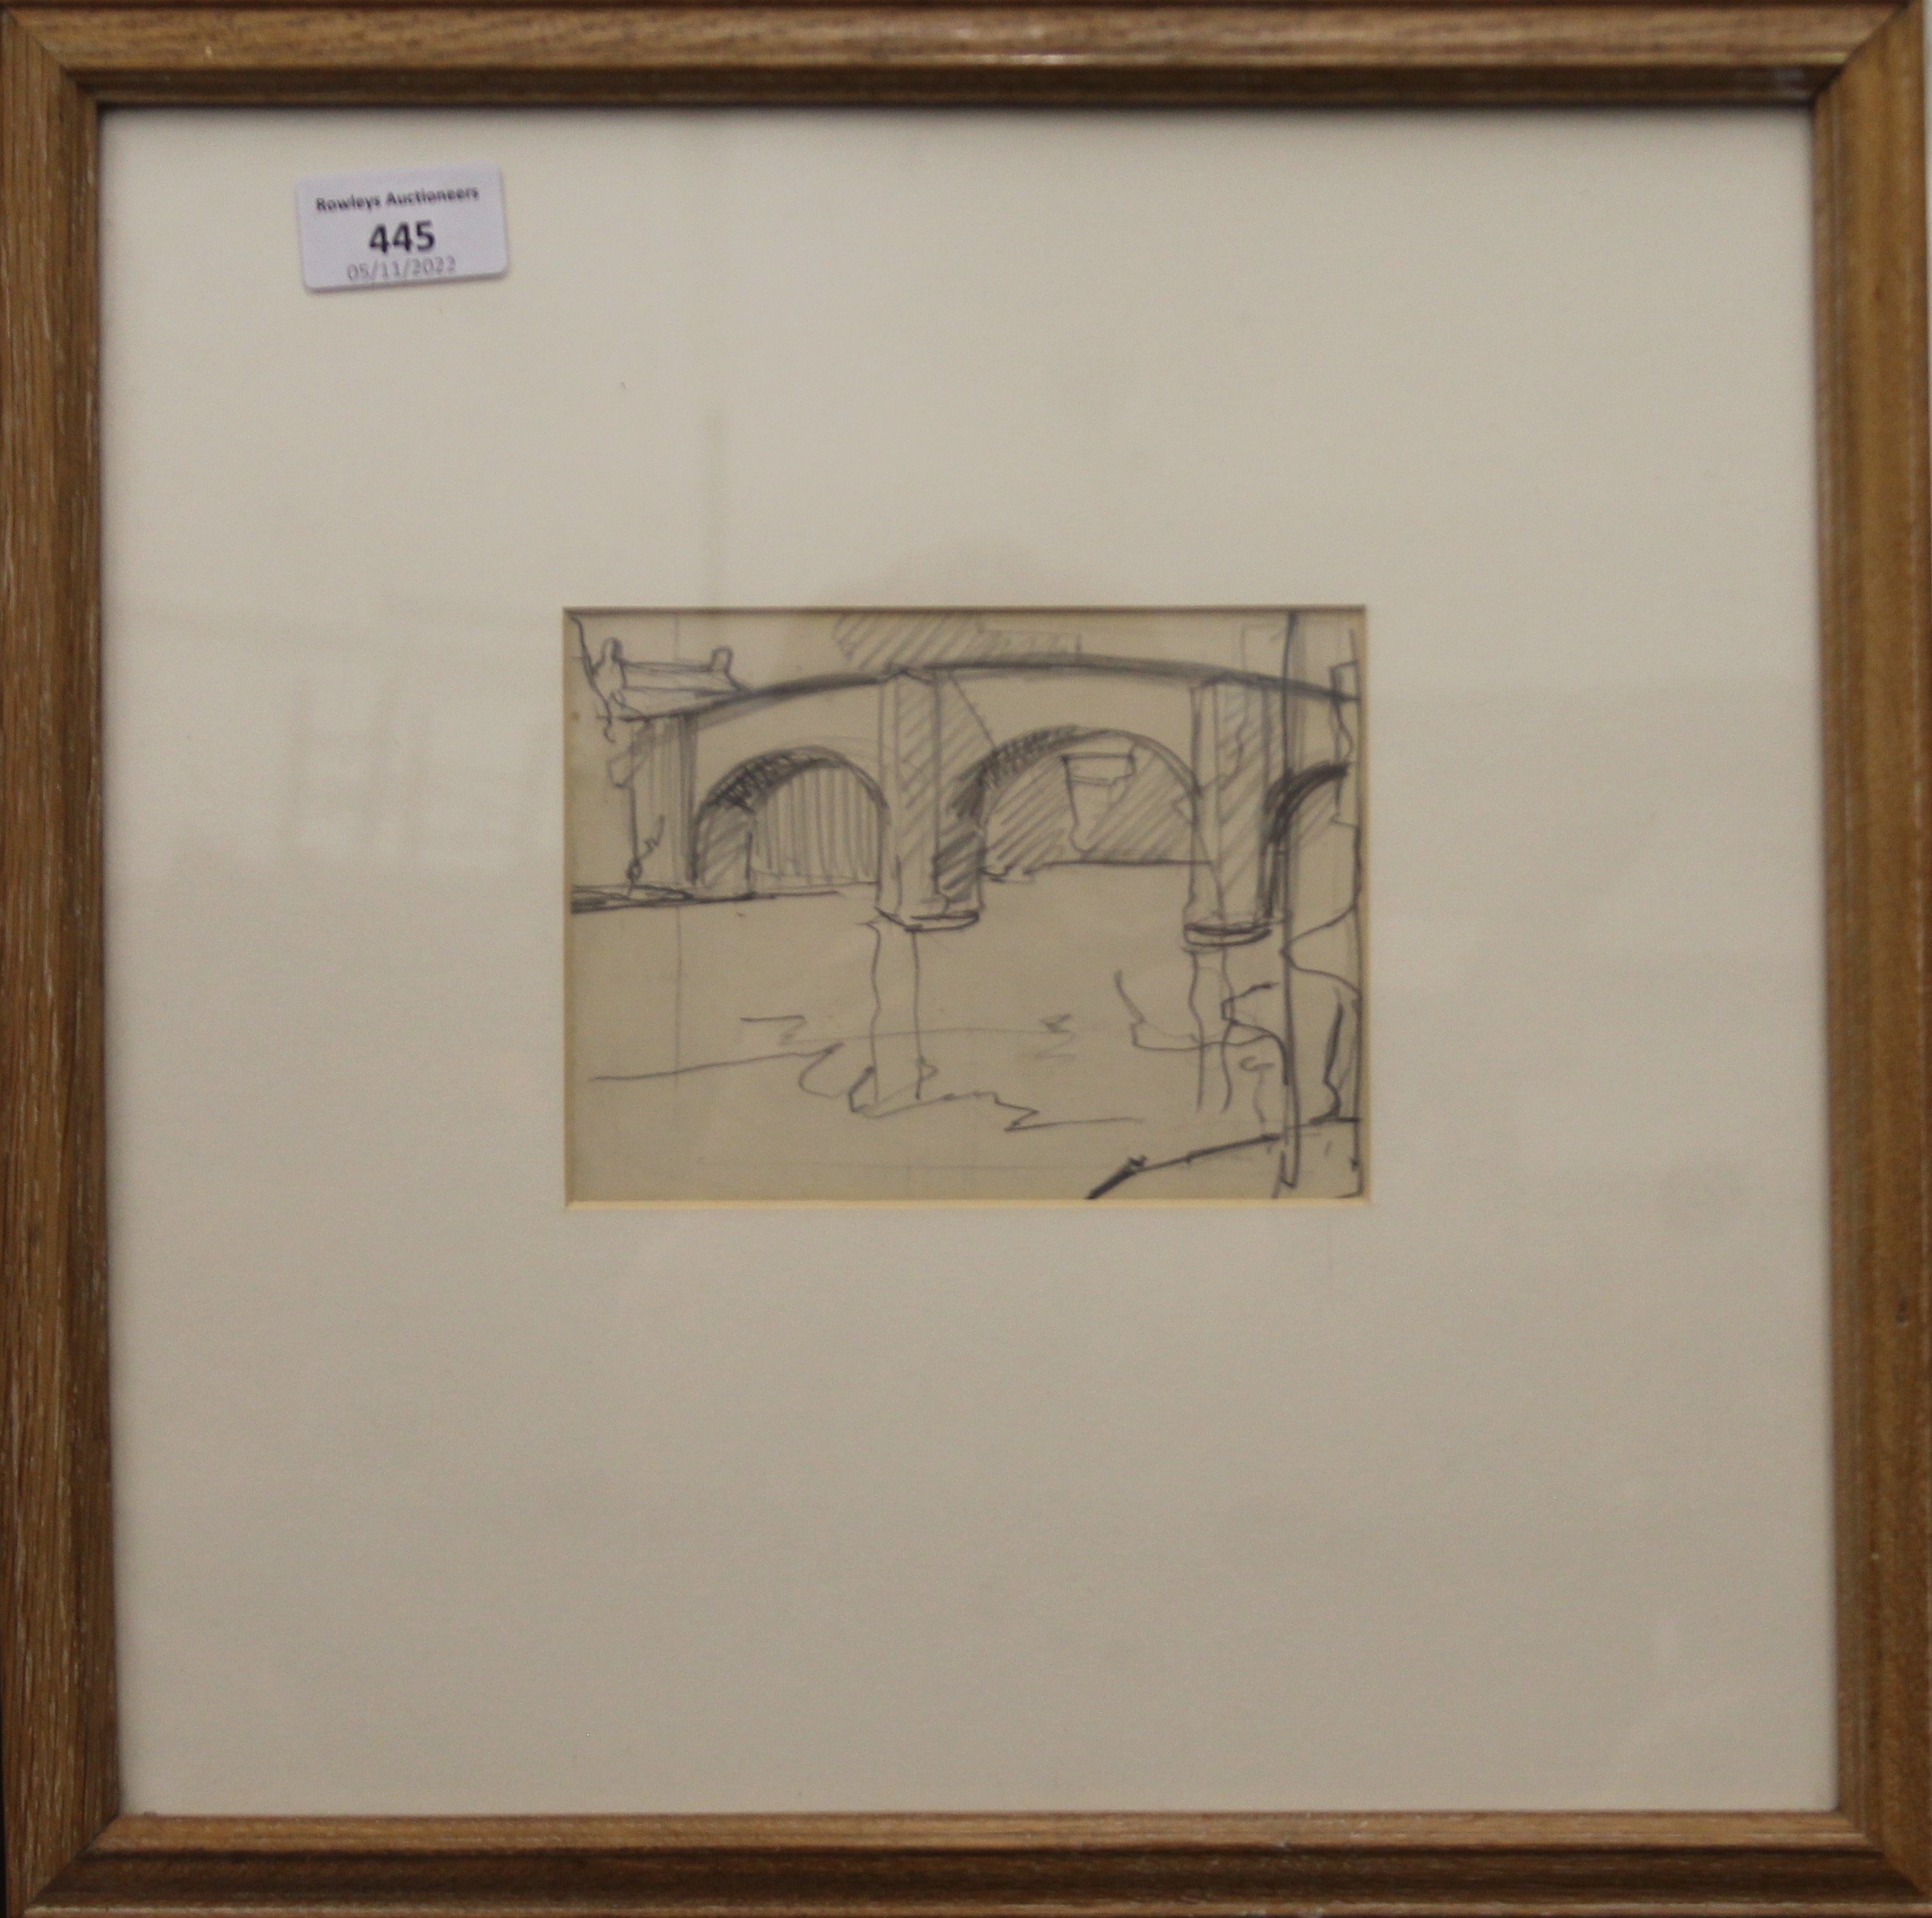 STANLEY ROYLE (1882-1961), Baslow Bridge, Derbyshire, pencil sketch, framed and glazed. 14. - Image 2 of 4